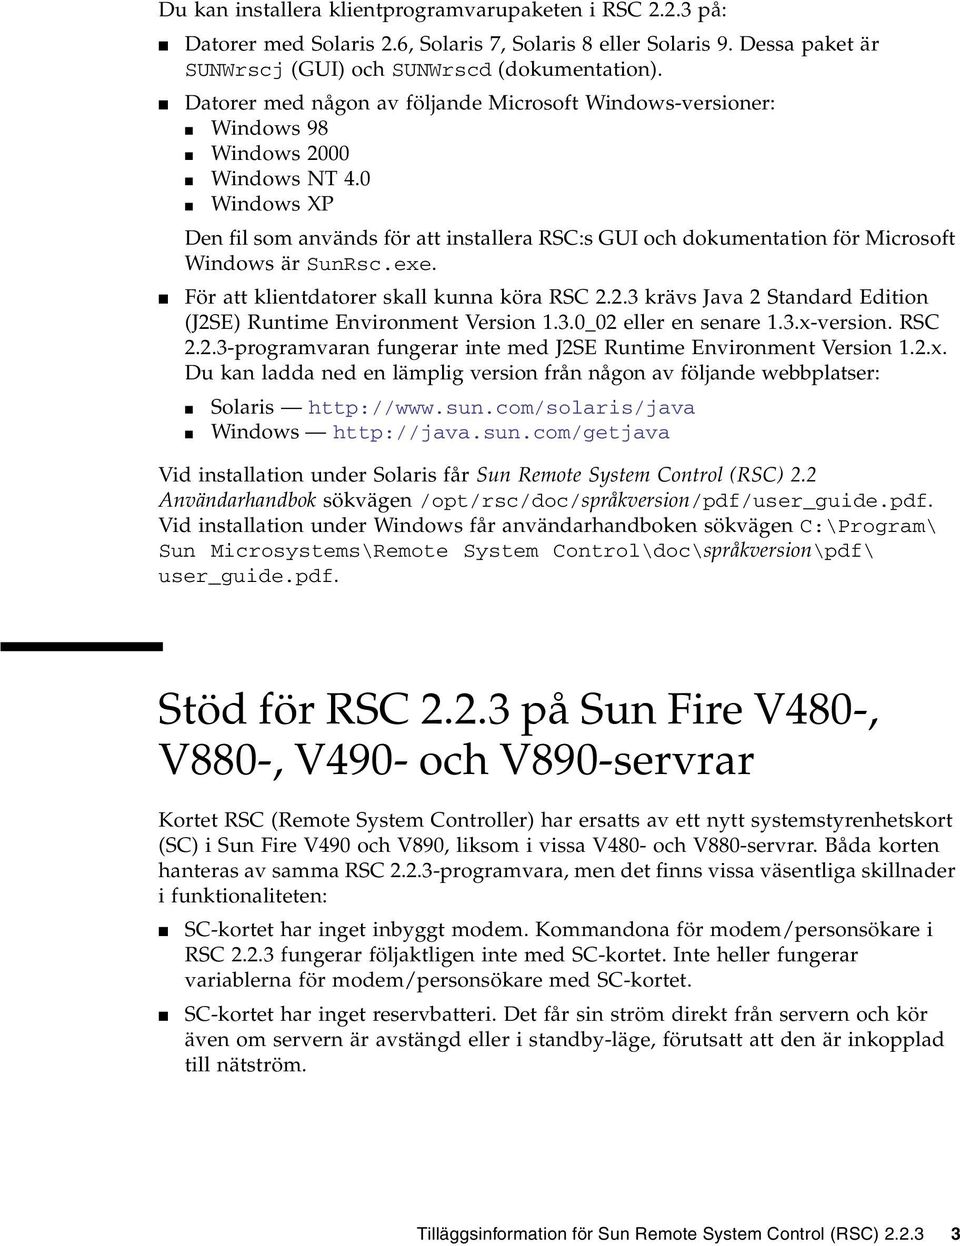 0 Windows XP Den fil som används för att installera RSC:s GUI och dokumentation för Microsoft Windows är SunRsc.exe. För att klientdatorer skall kunna köra RSC 2.